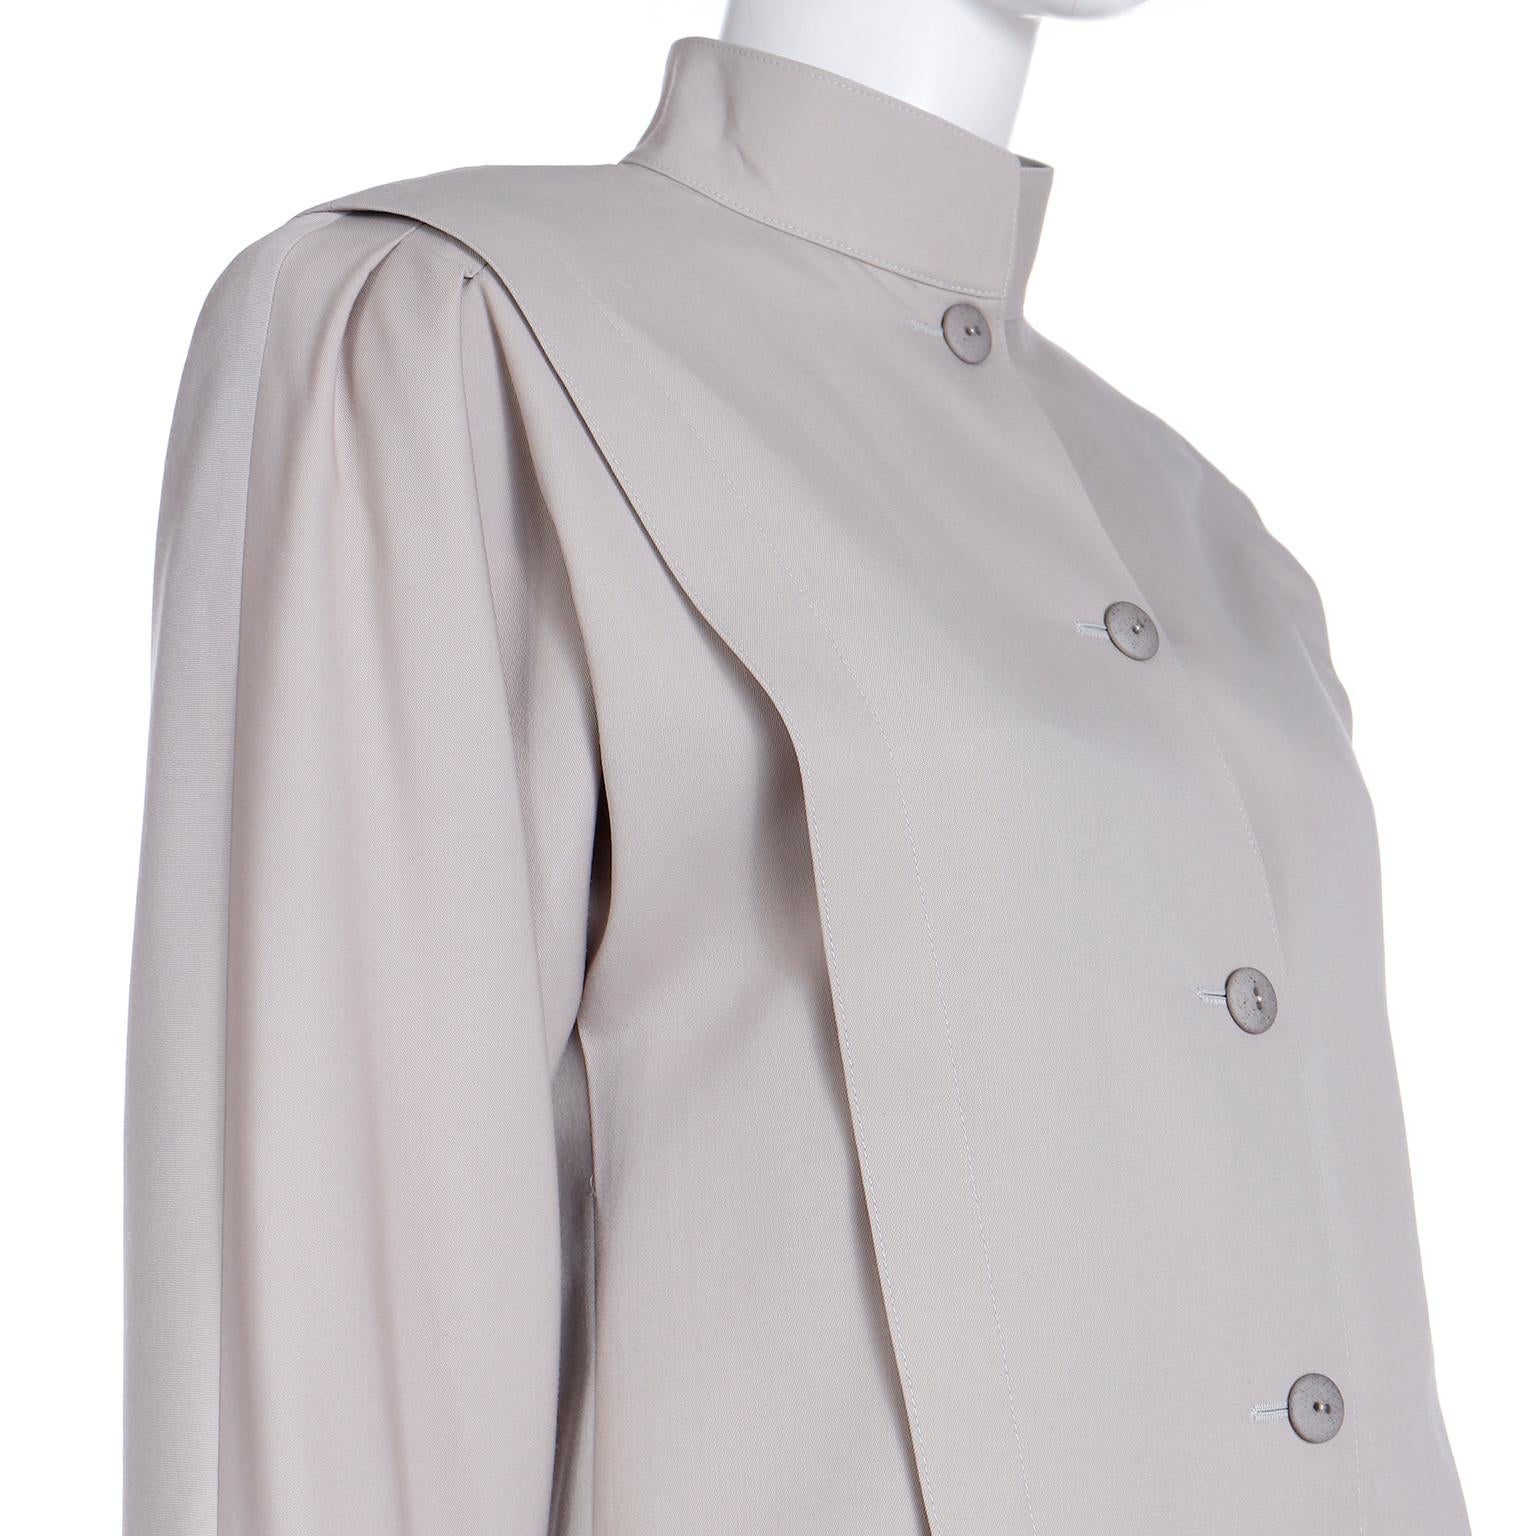 Louis Feraud 2 Piece Tan Jacket & Wrap Skirt Suit For Sale 3